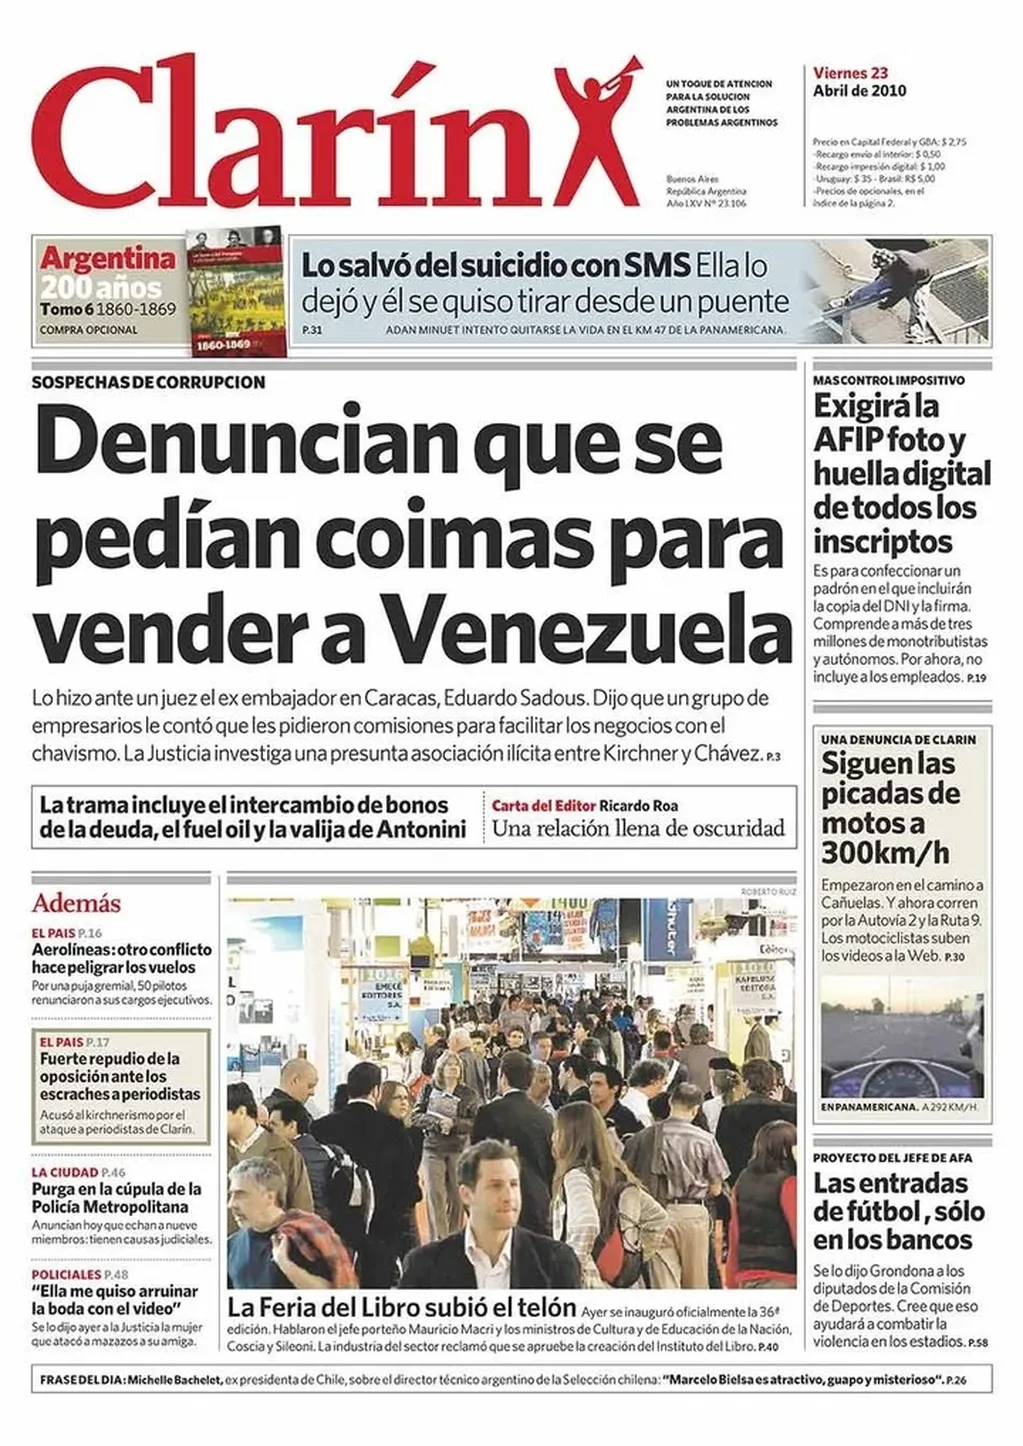 Eduardo Sadous denunció una "embajada paralela" entre Argentina y Venezuela.